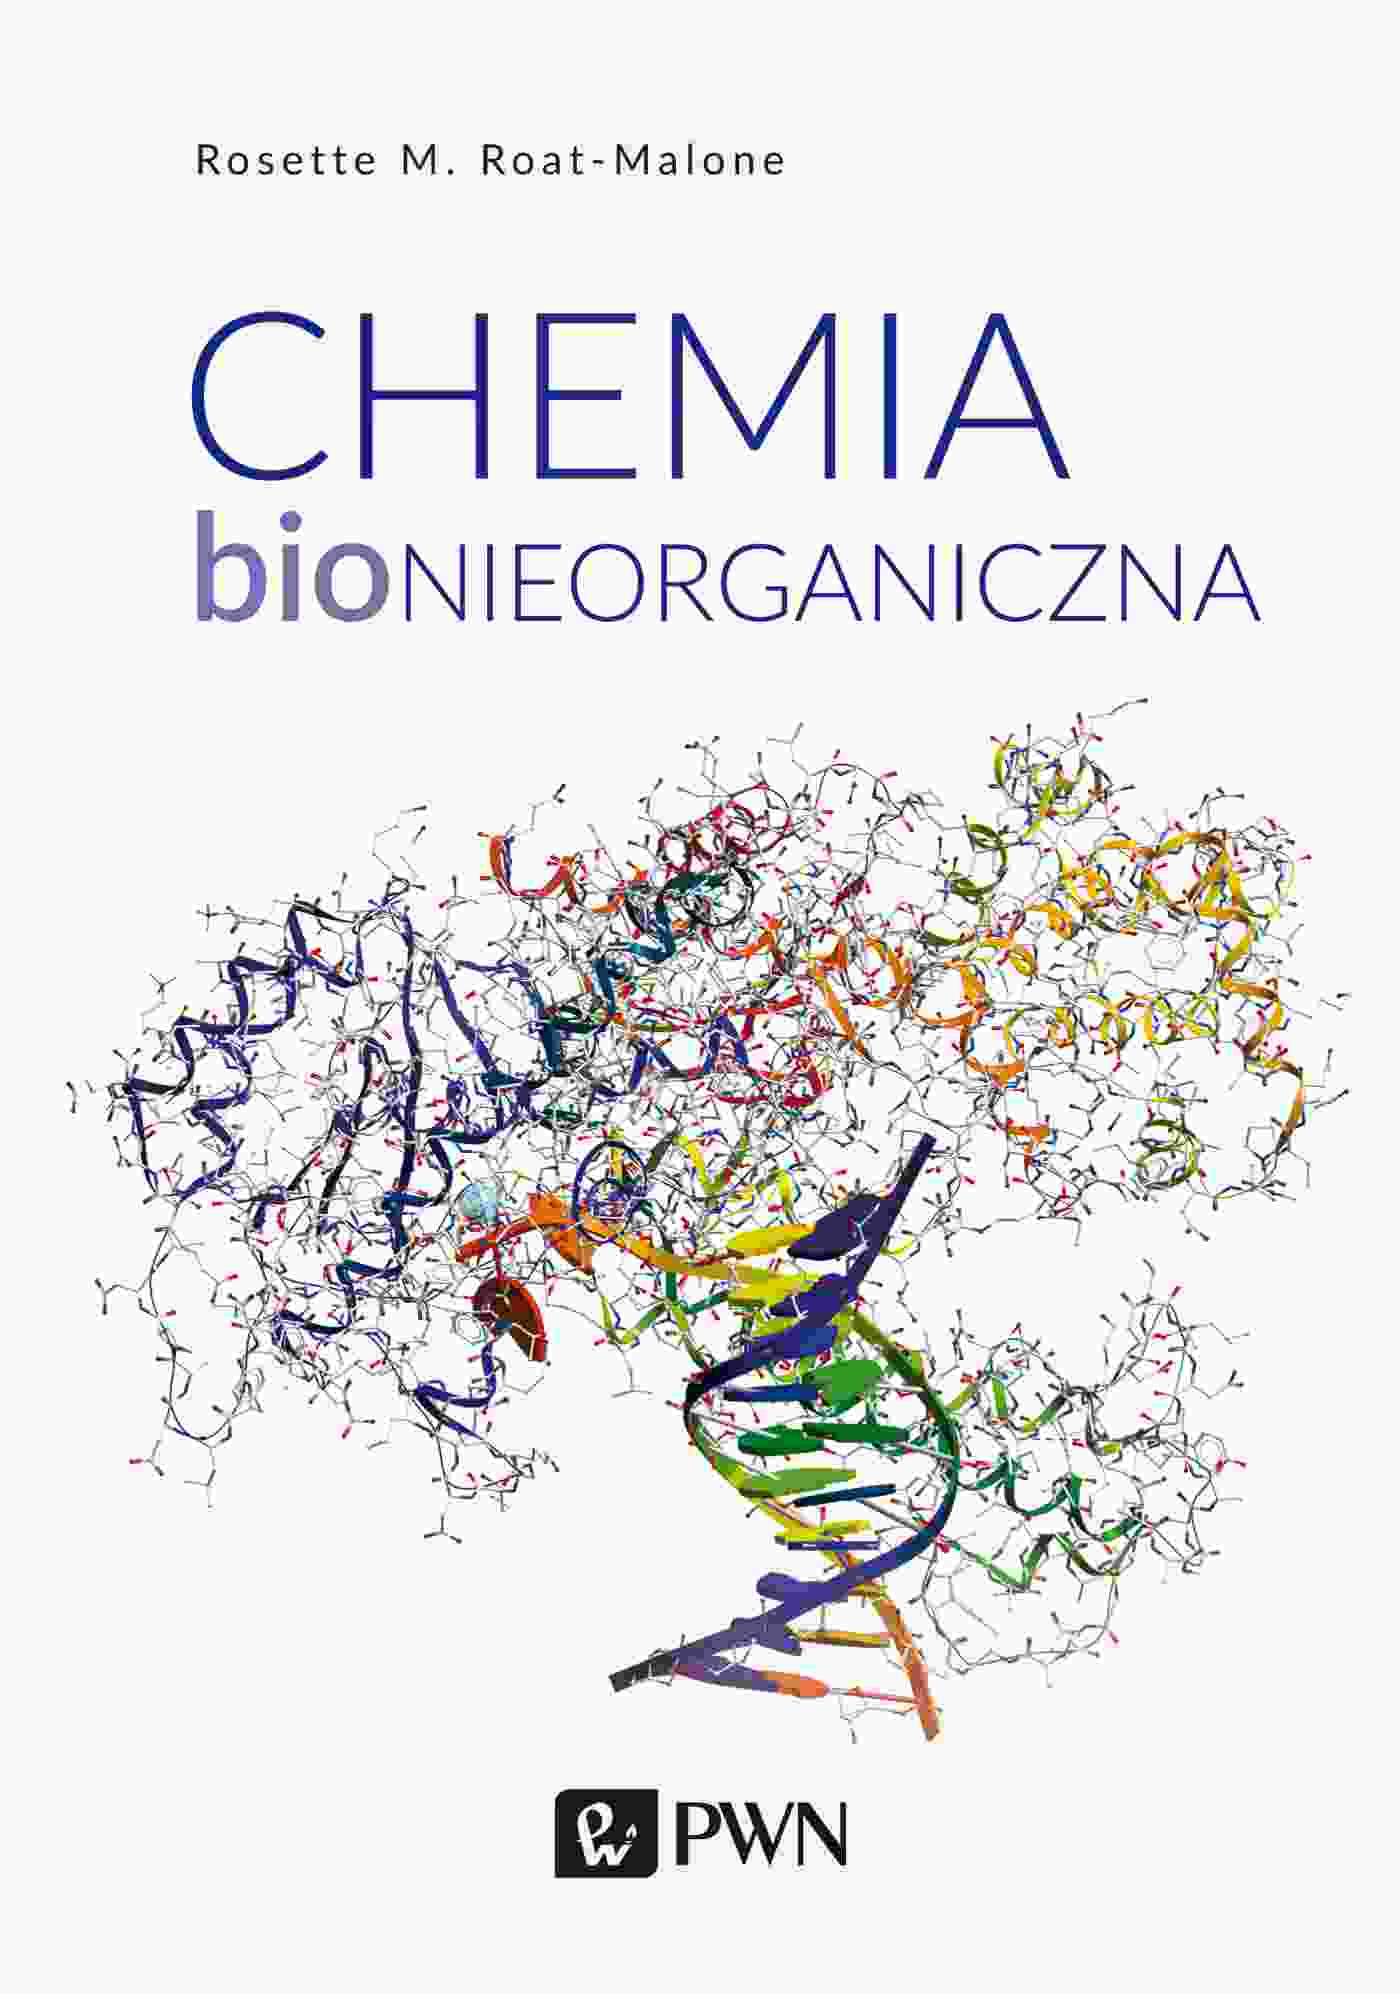 Carte Chemia bionieorganiczna Rosette M. Roat-Malone